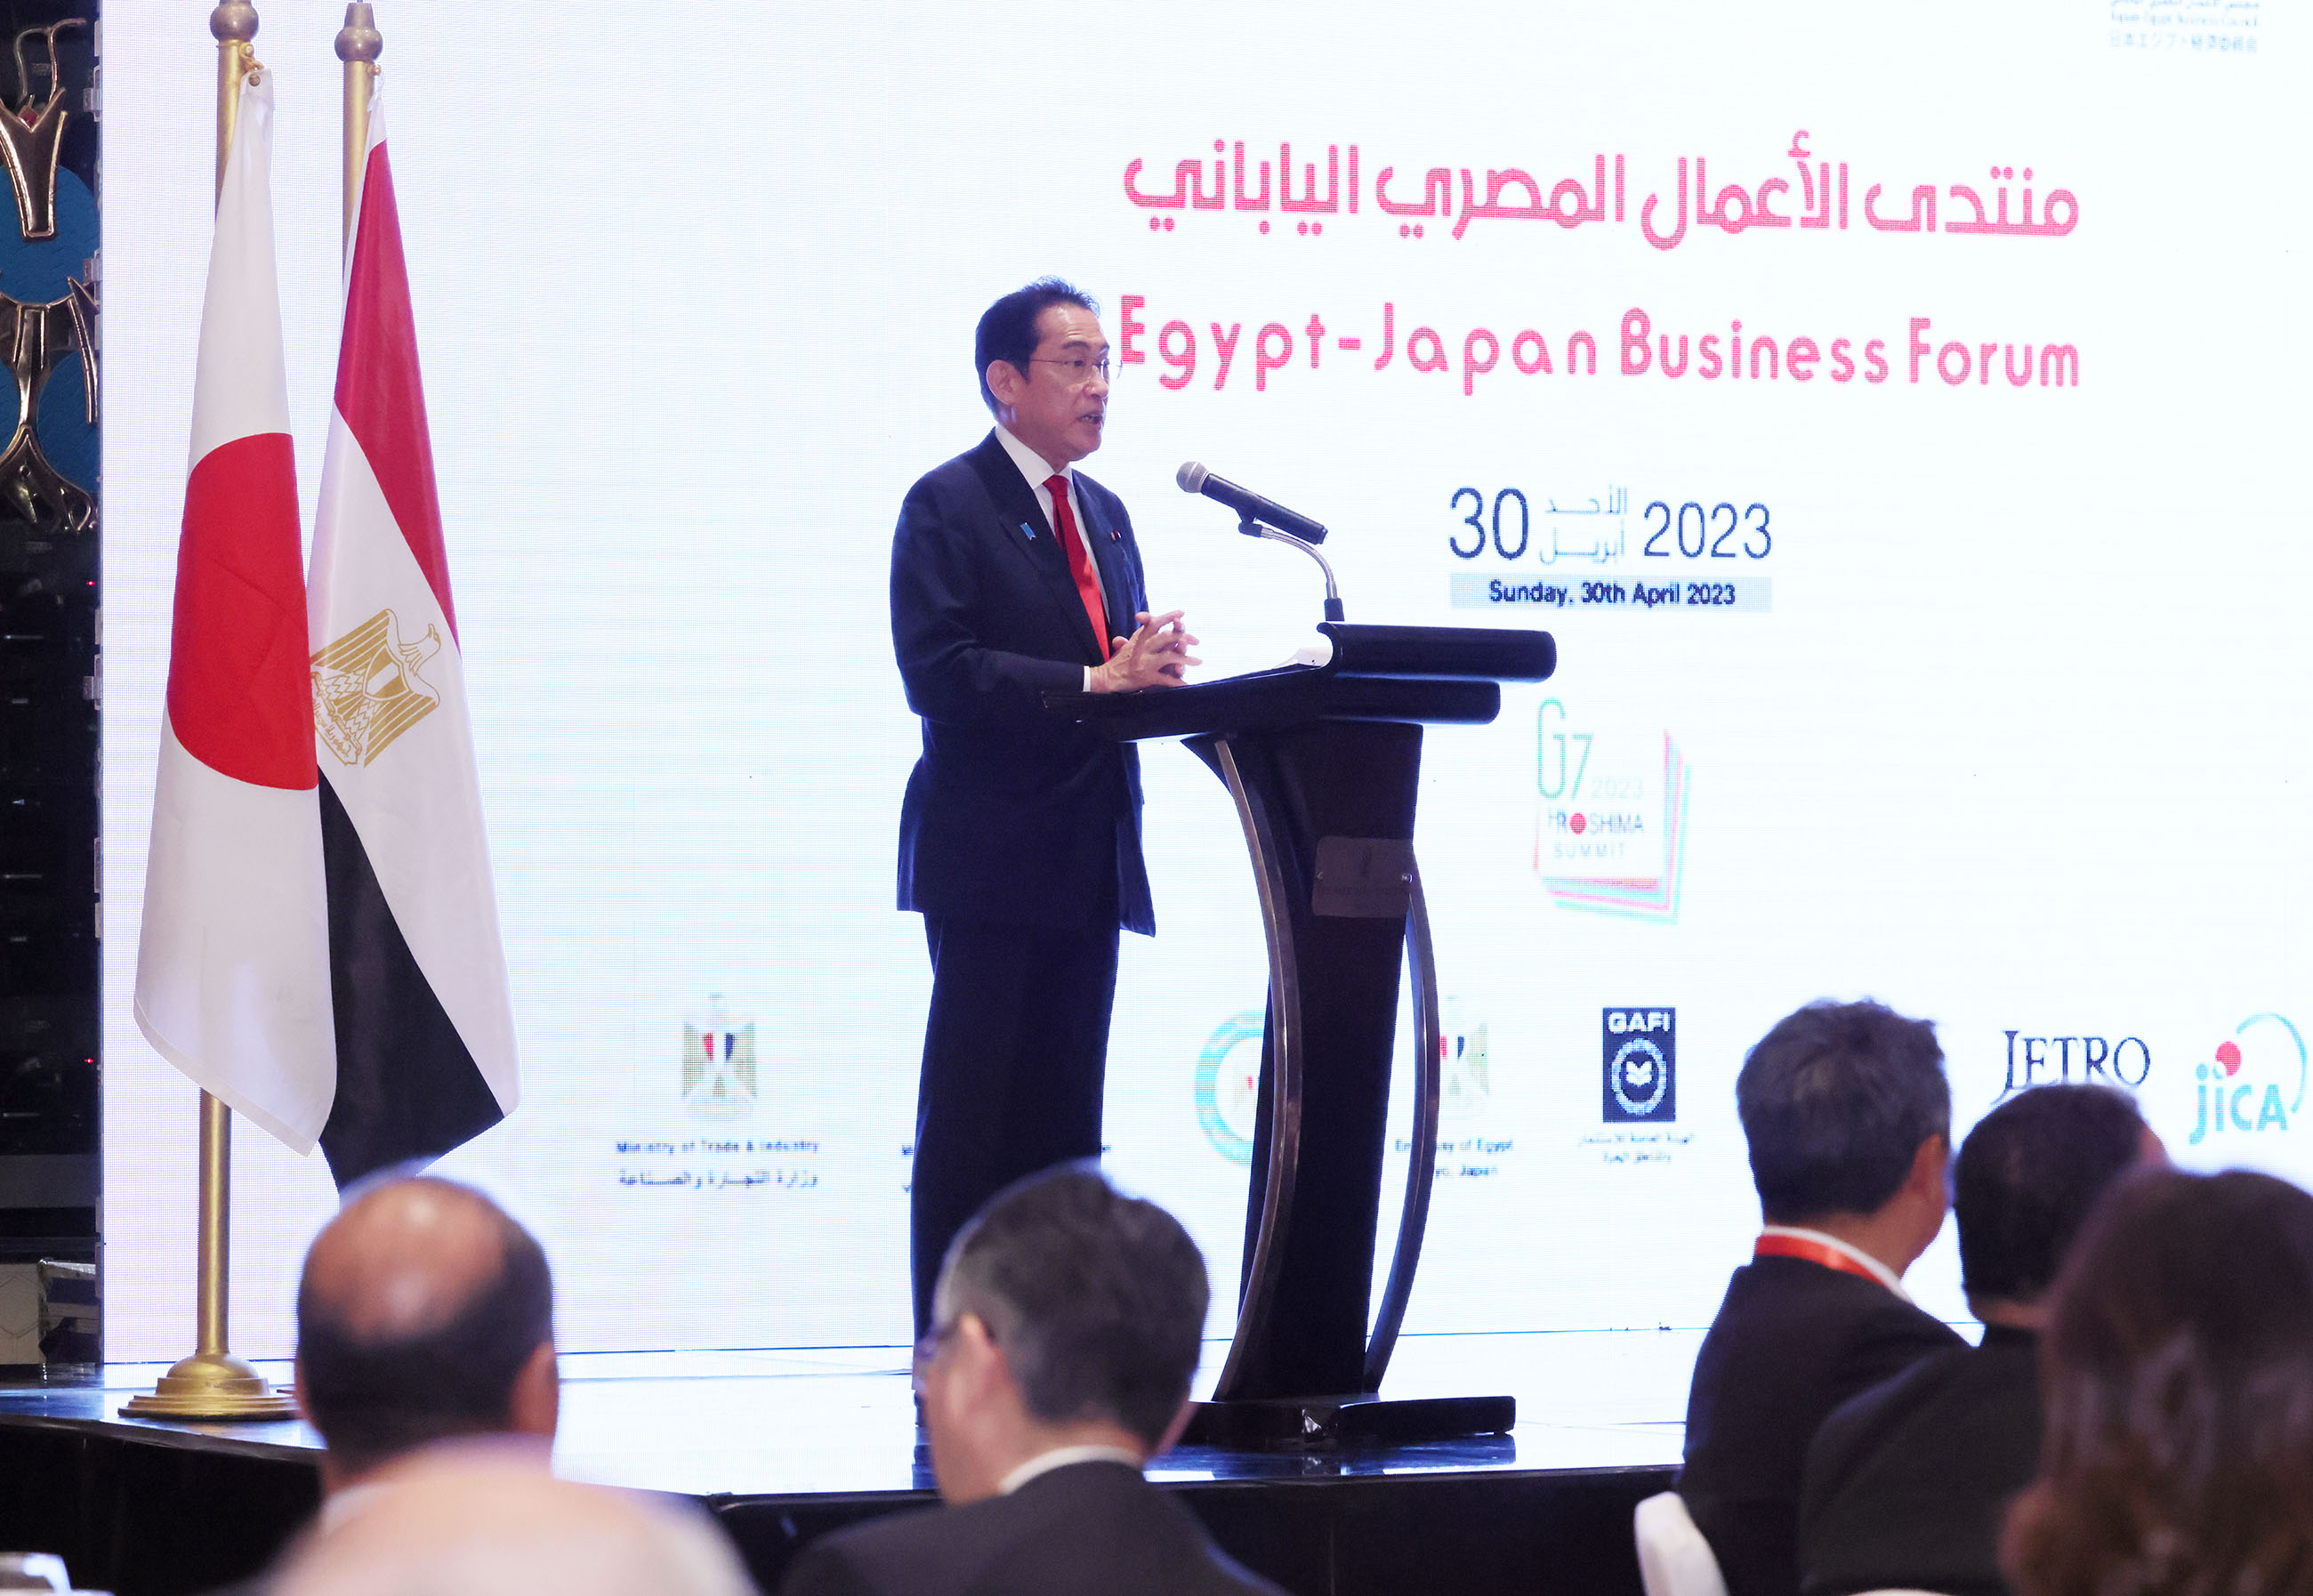 Prime Minister Kishida delivering an address at the Japan-Egypt Business Forum